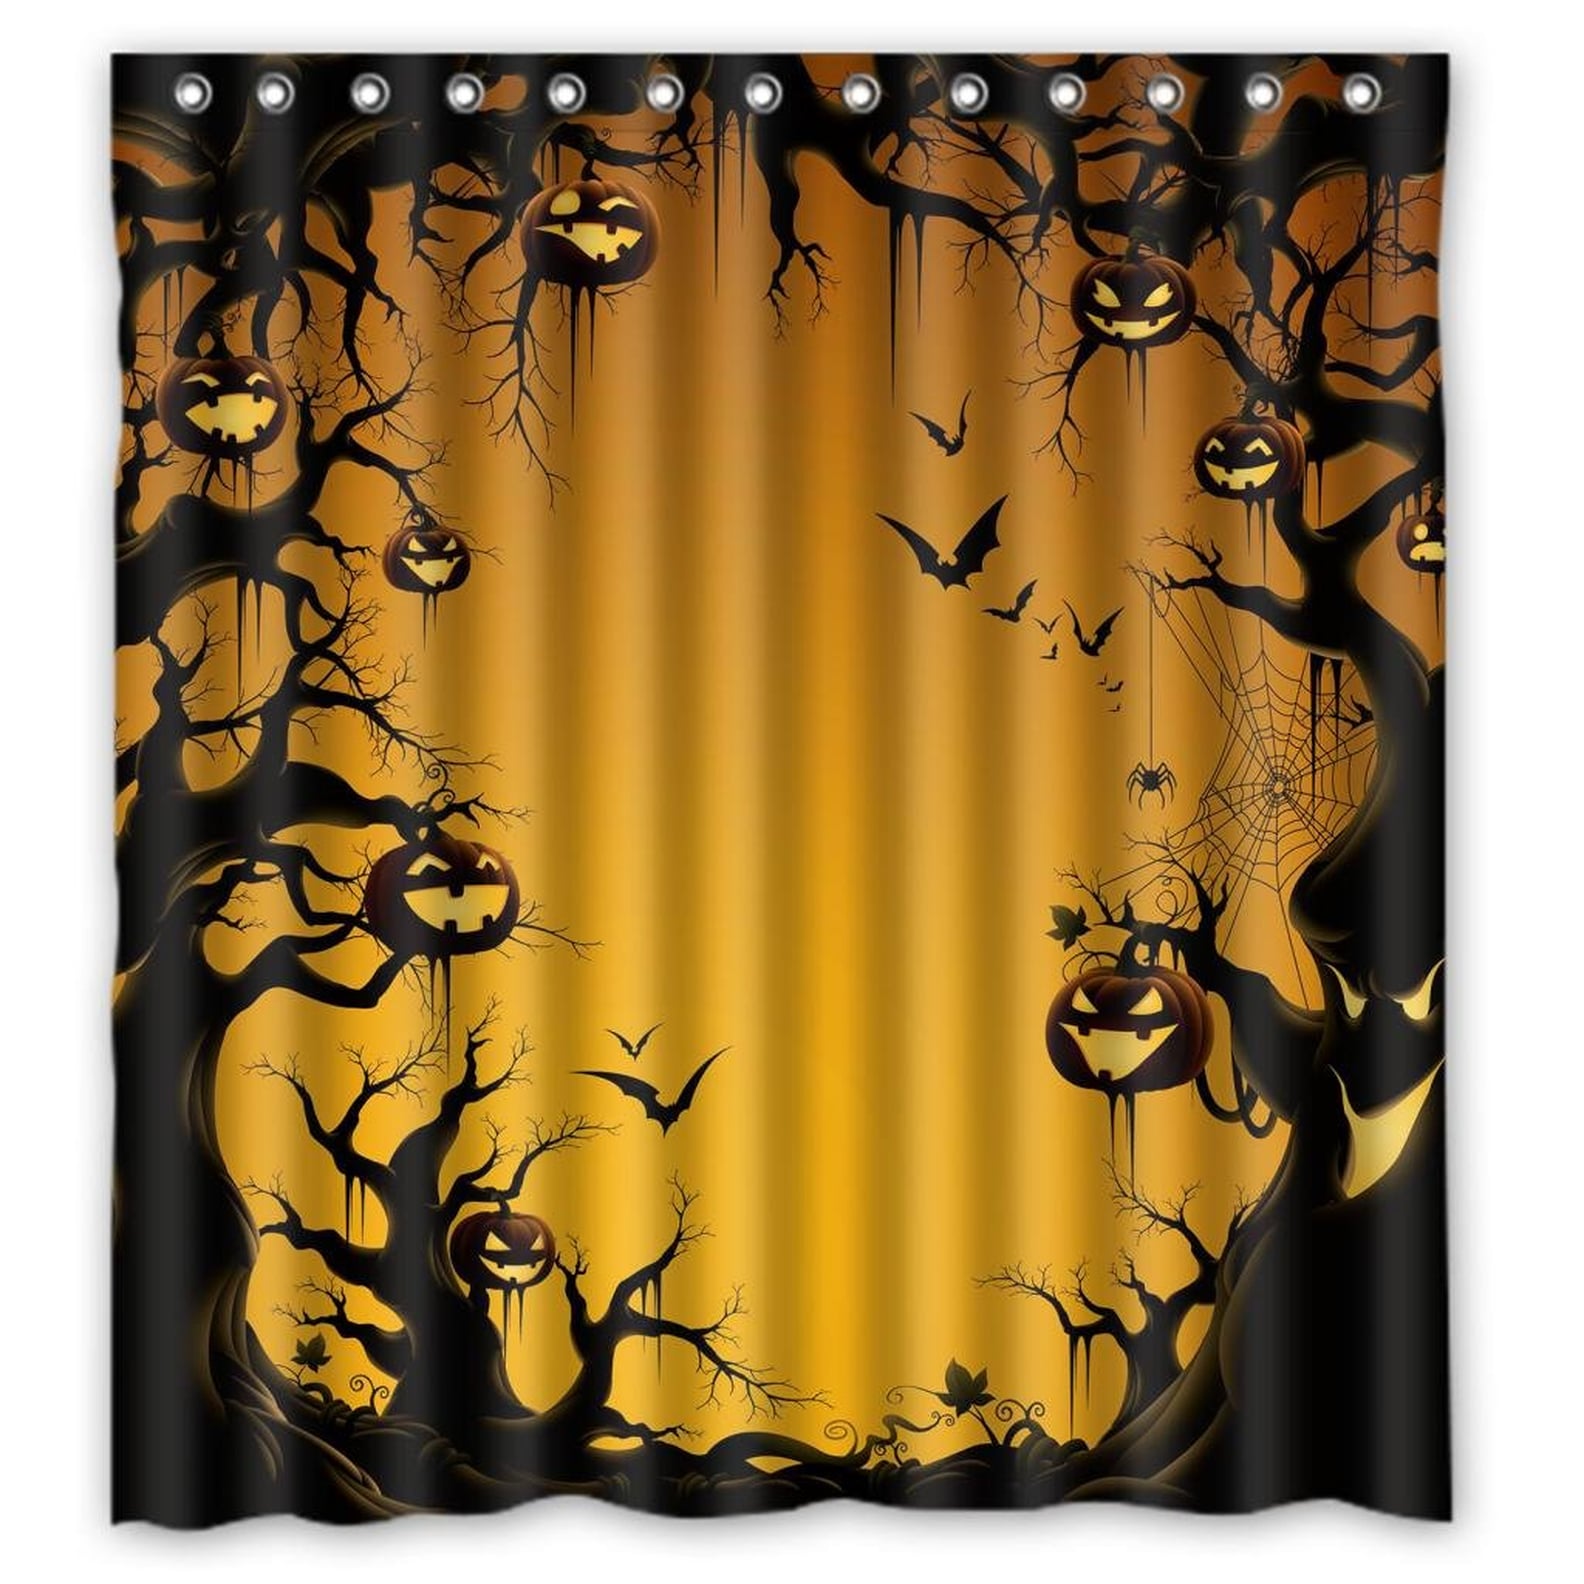 Halloween Shower Curtains | POPSUGAR Home